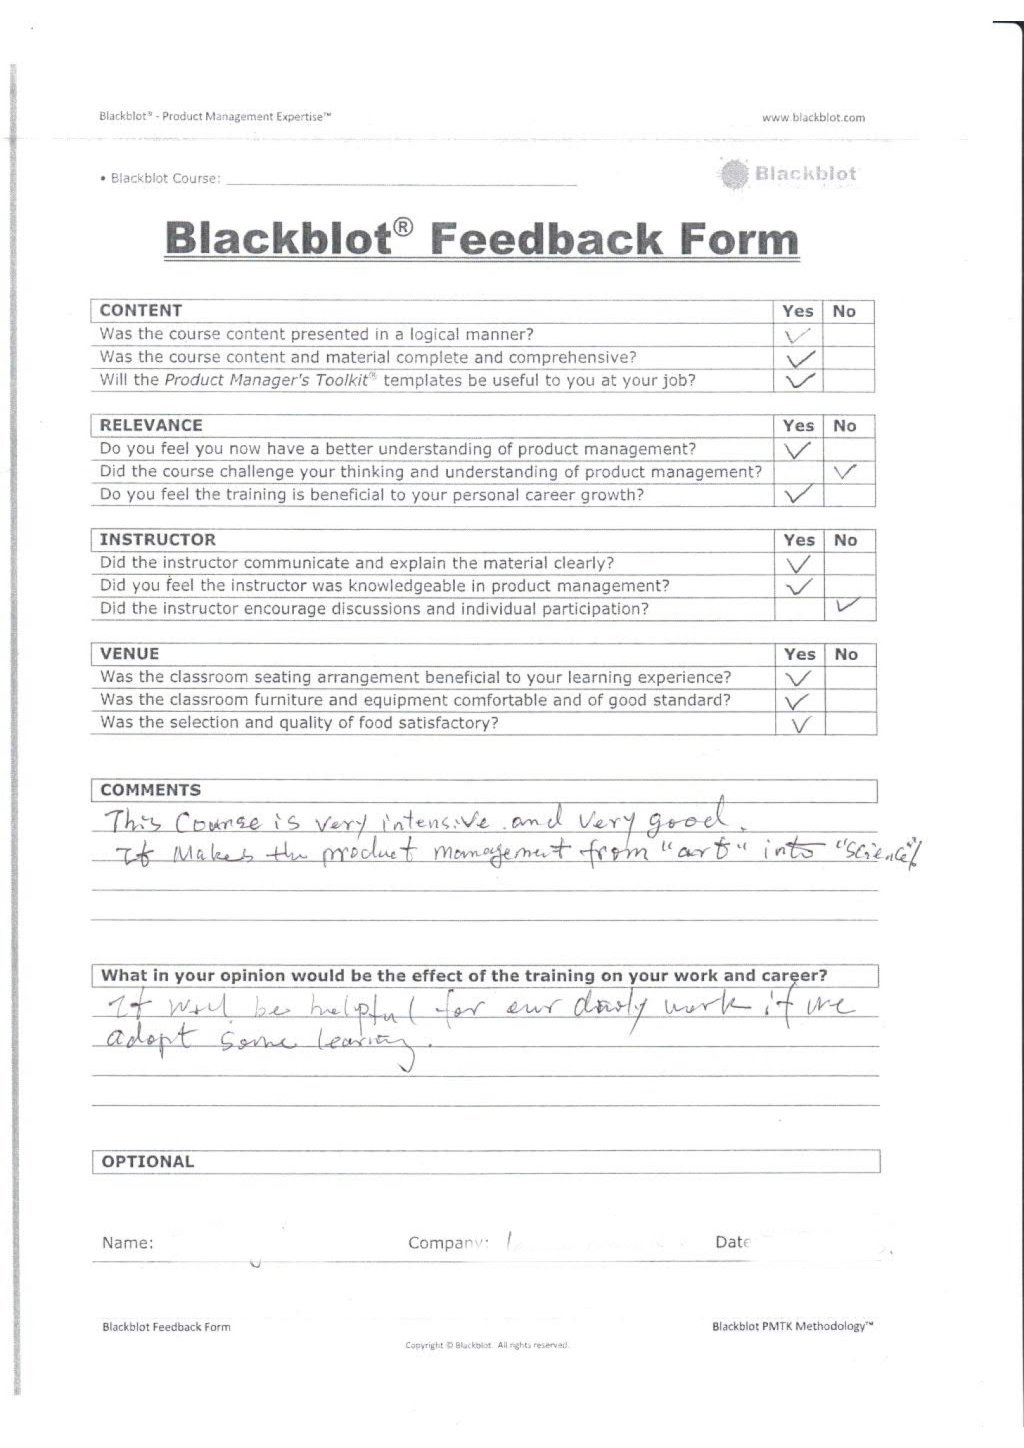 Blackblot: Blackblot_Strategic_Product_Management_Feedback_Form_029.jpg